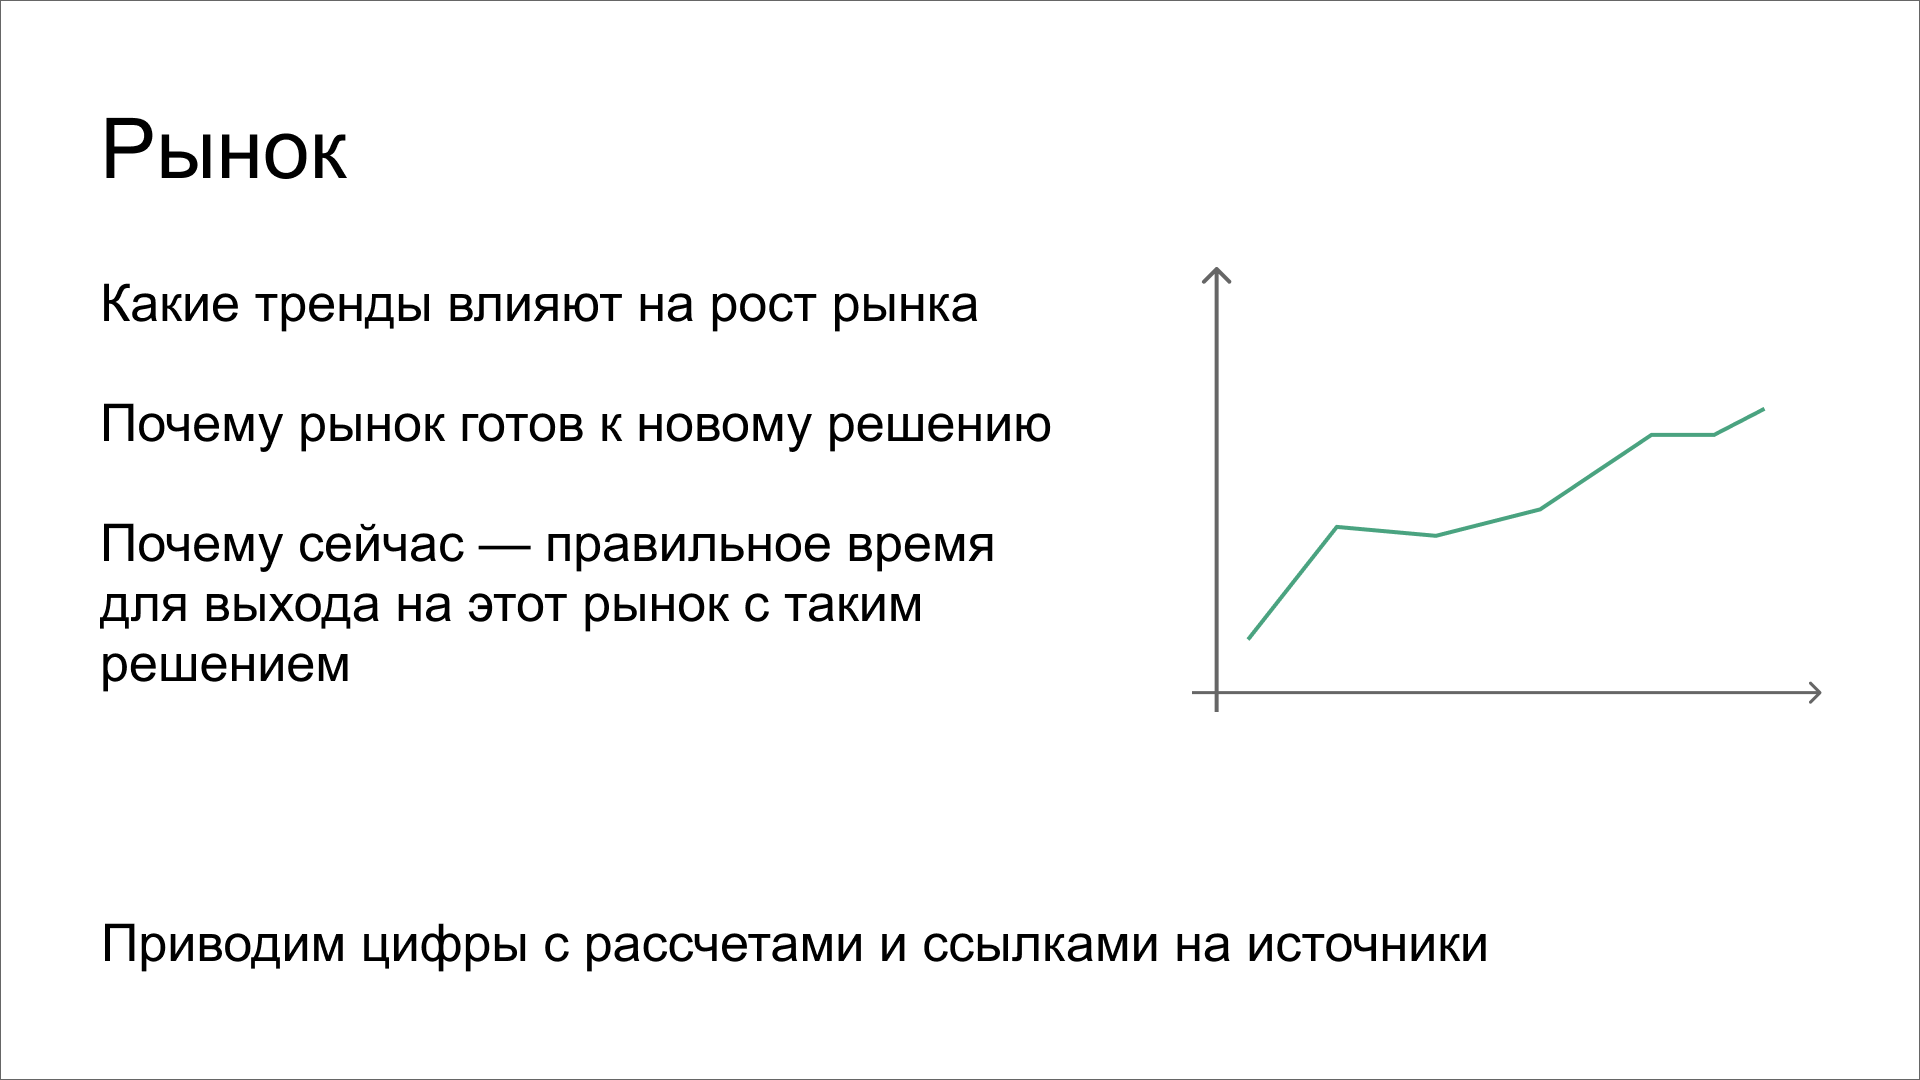 Шаблон слайда для описания рынка. На слайде опорные вопросы: какие тренды влияют на рост, почему сейчас — самое время выходить на этот рынок. Показывают цифры и графики со ссылками на источники